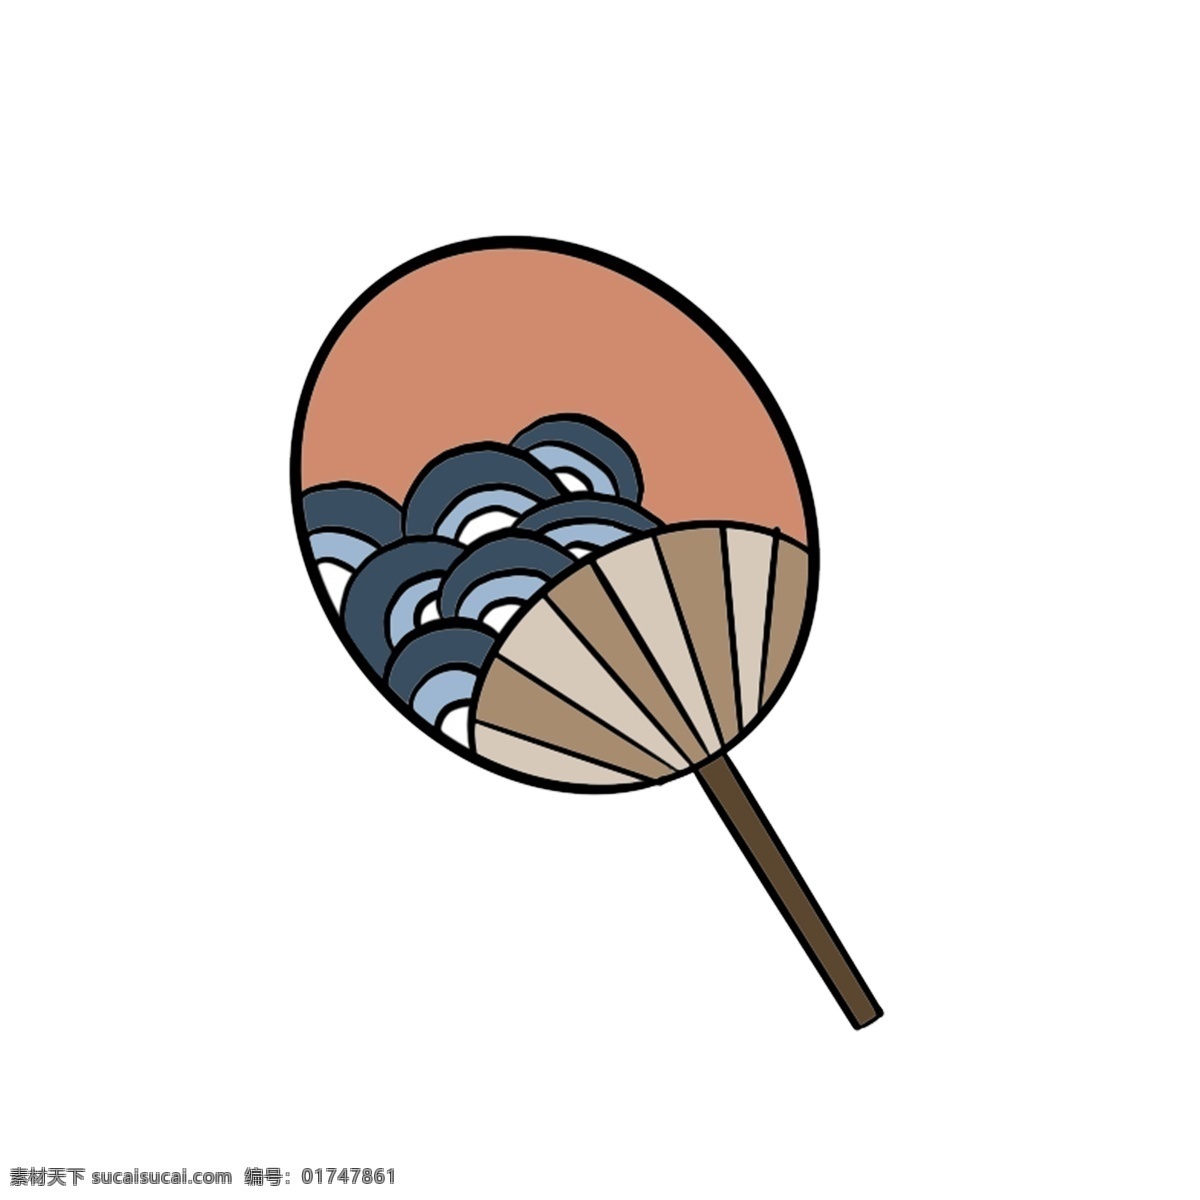 可爱 日本 扇子 插图 一把扇子 圆形扇子 云纹扇子 日本文化 可爱的扇子 日本扇子